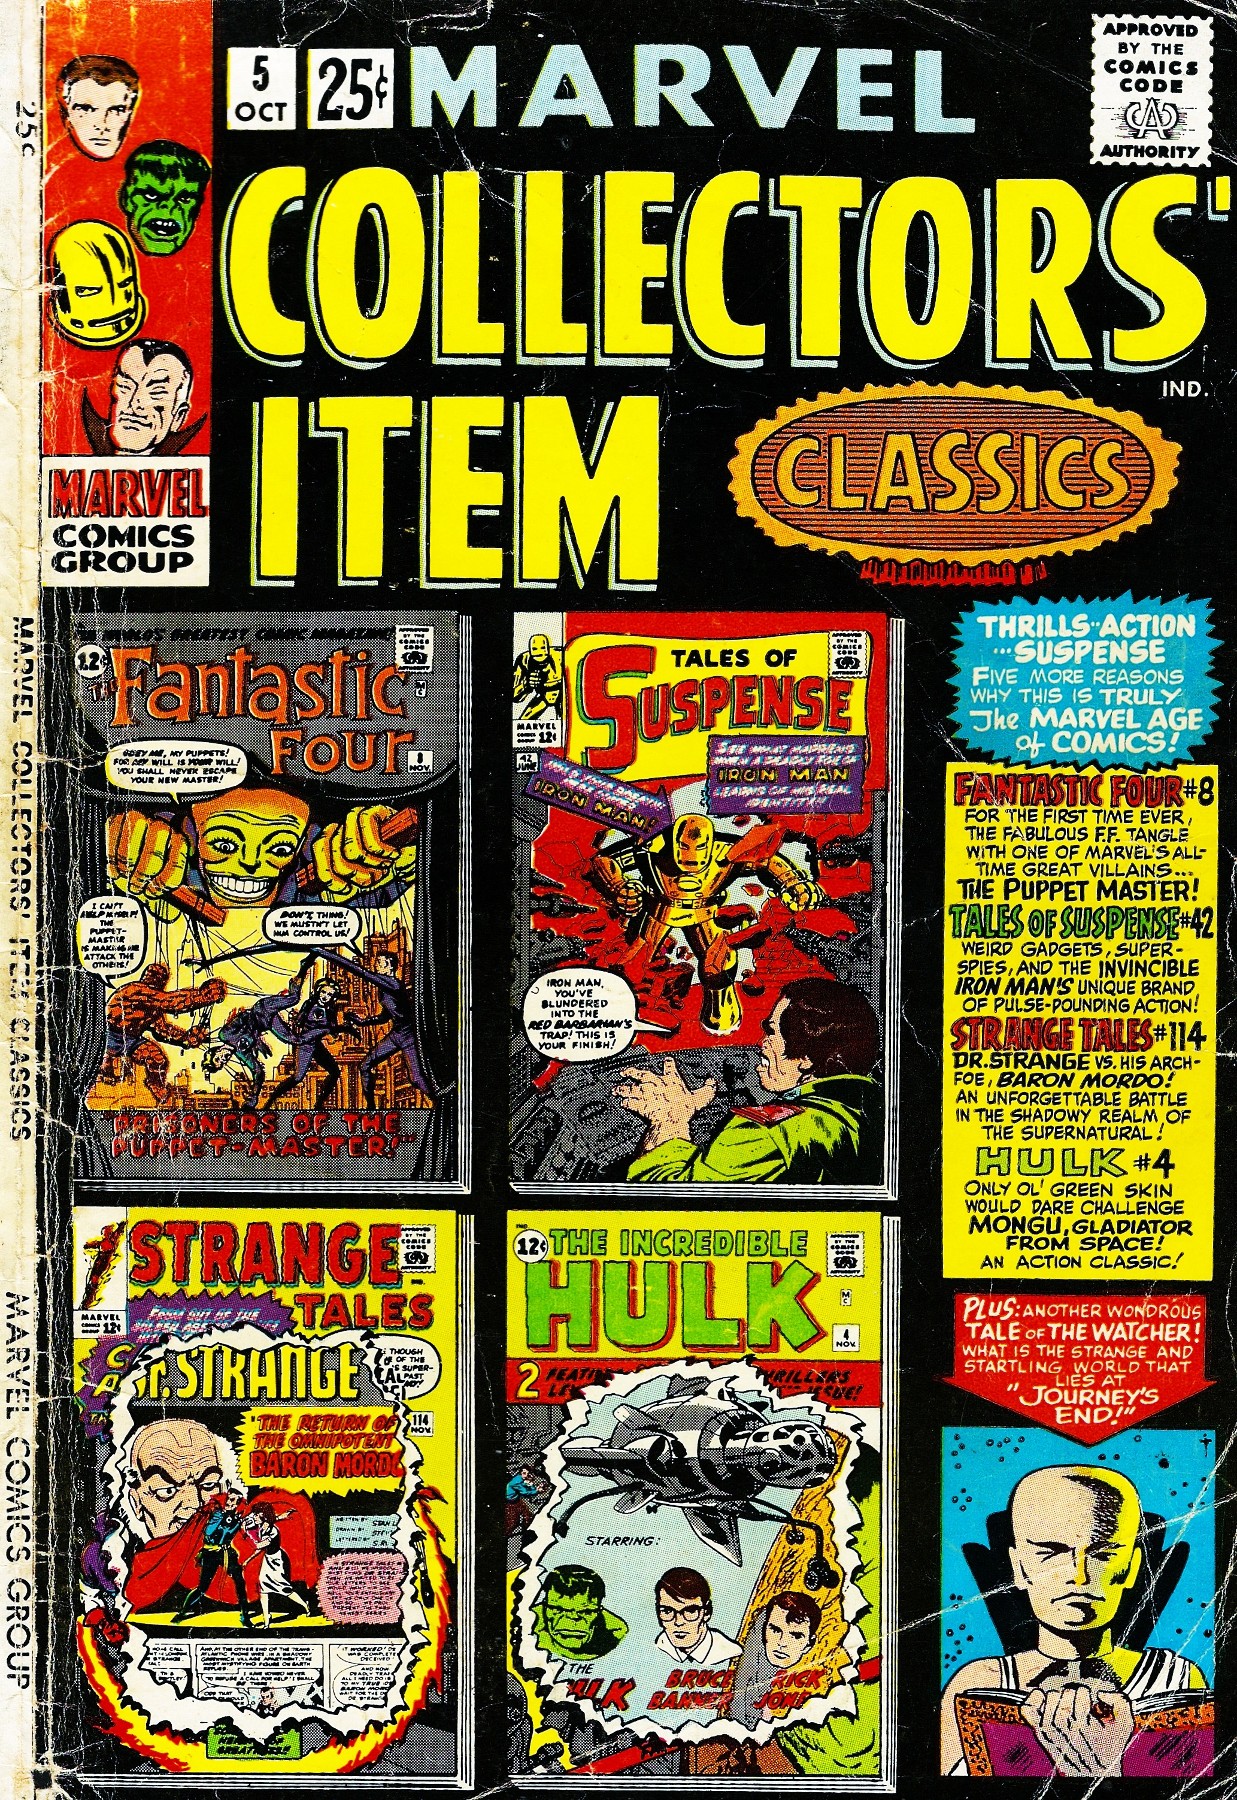 Read online Marvel Collectors' Item Classics comic -  Issue #5 - 1